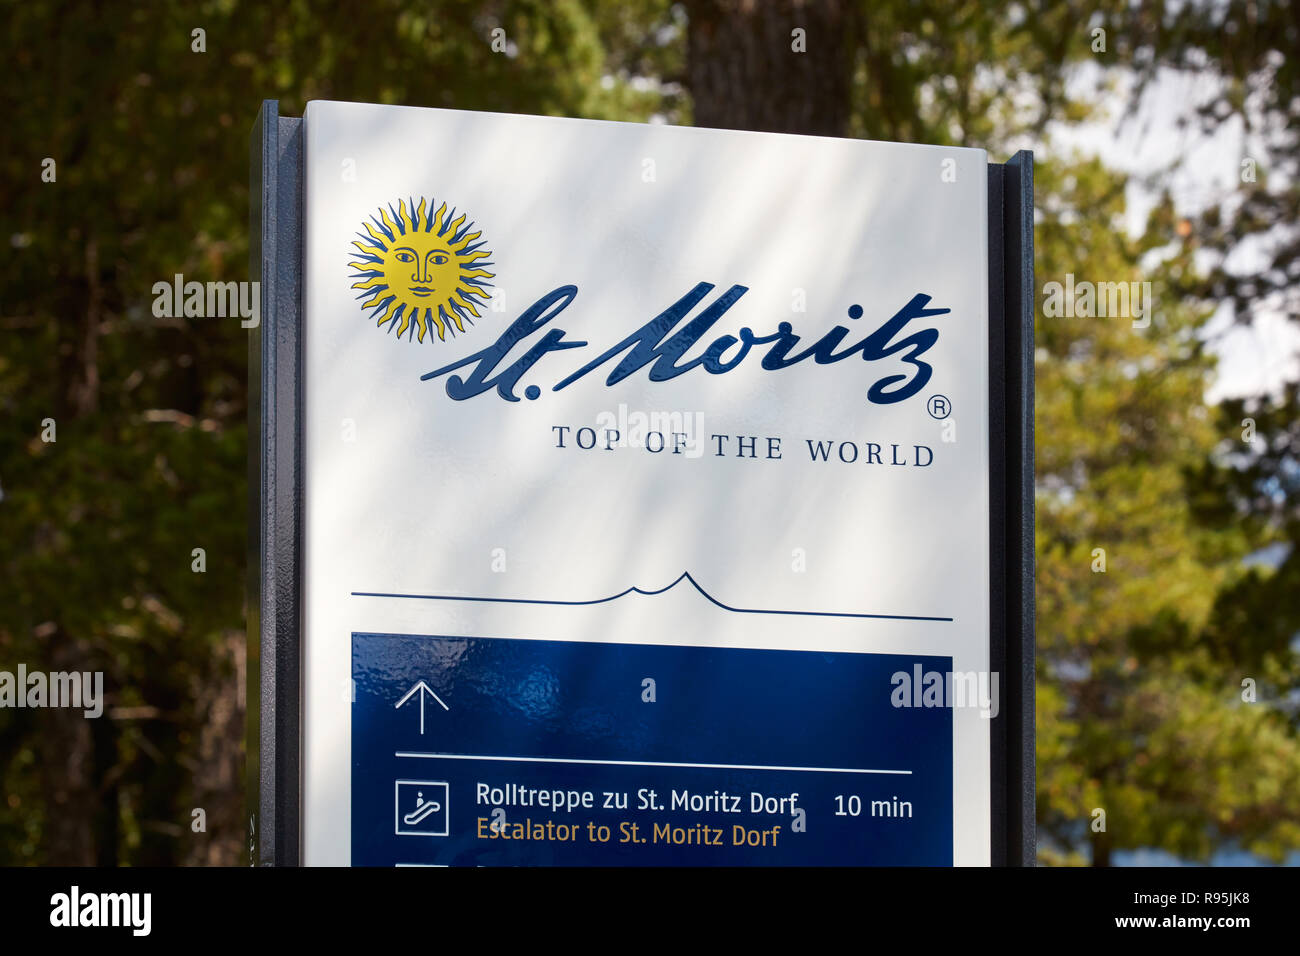 SANKT MORITZ, Svizzera - Agosto 16, 2018: Informazioni segno con il logo della città in una soleggiata giornata estiva in Sankt Moritz, Svizzera Foto Stock